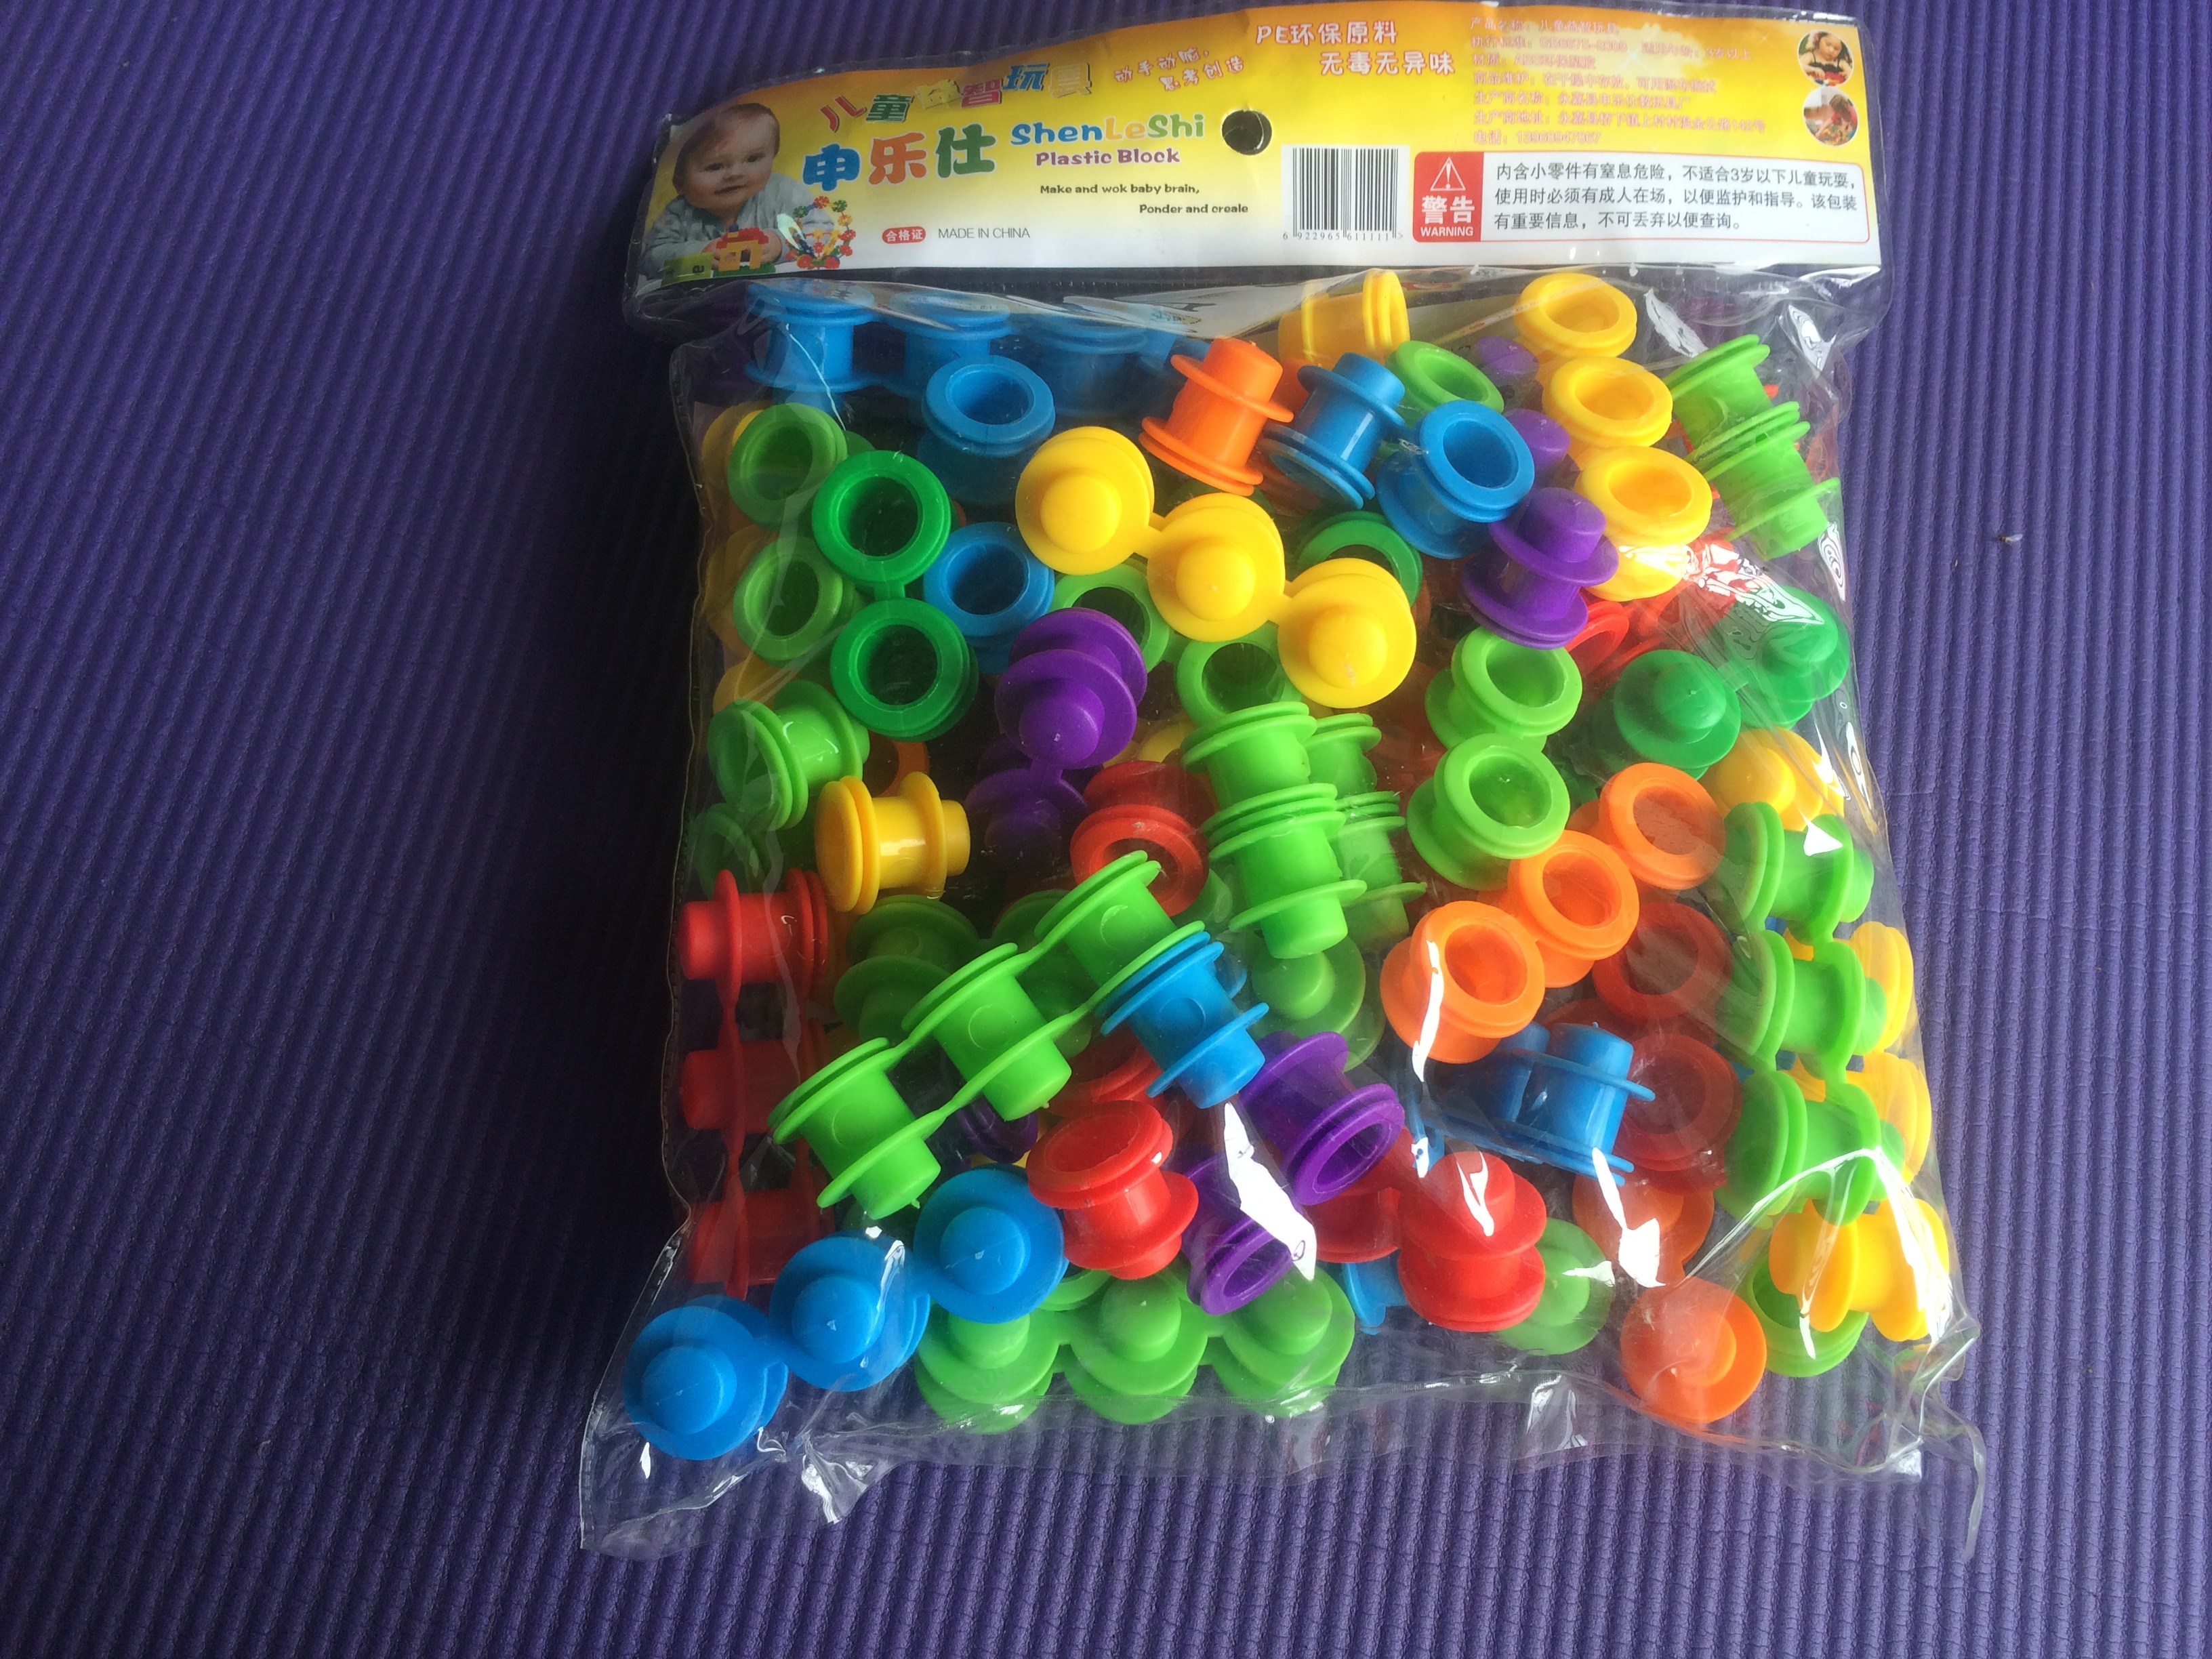 幼儿园益智拼插玩具 桌面塑料小型积木 幼儿彩虹帽拼装玩具